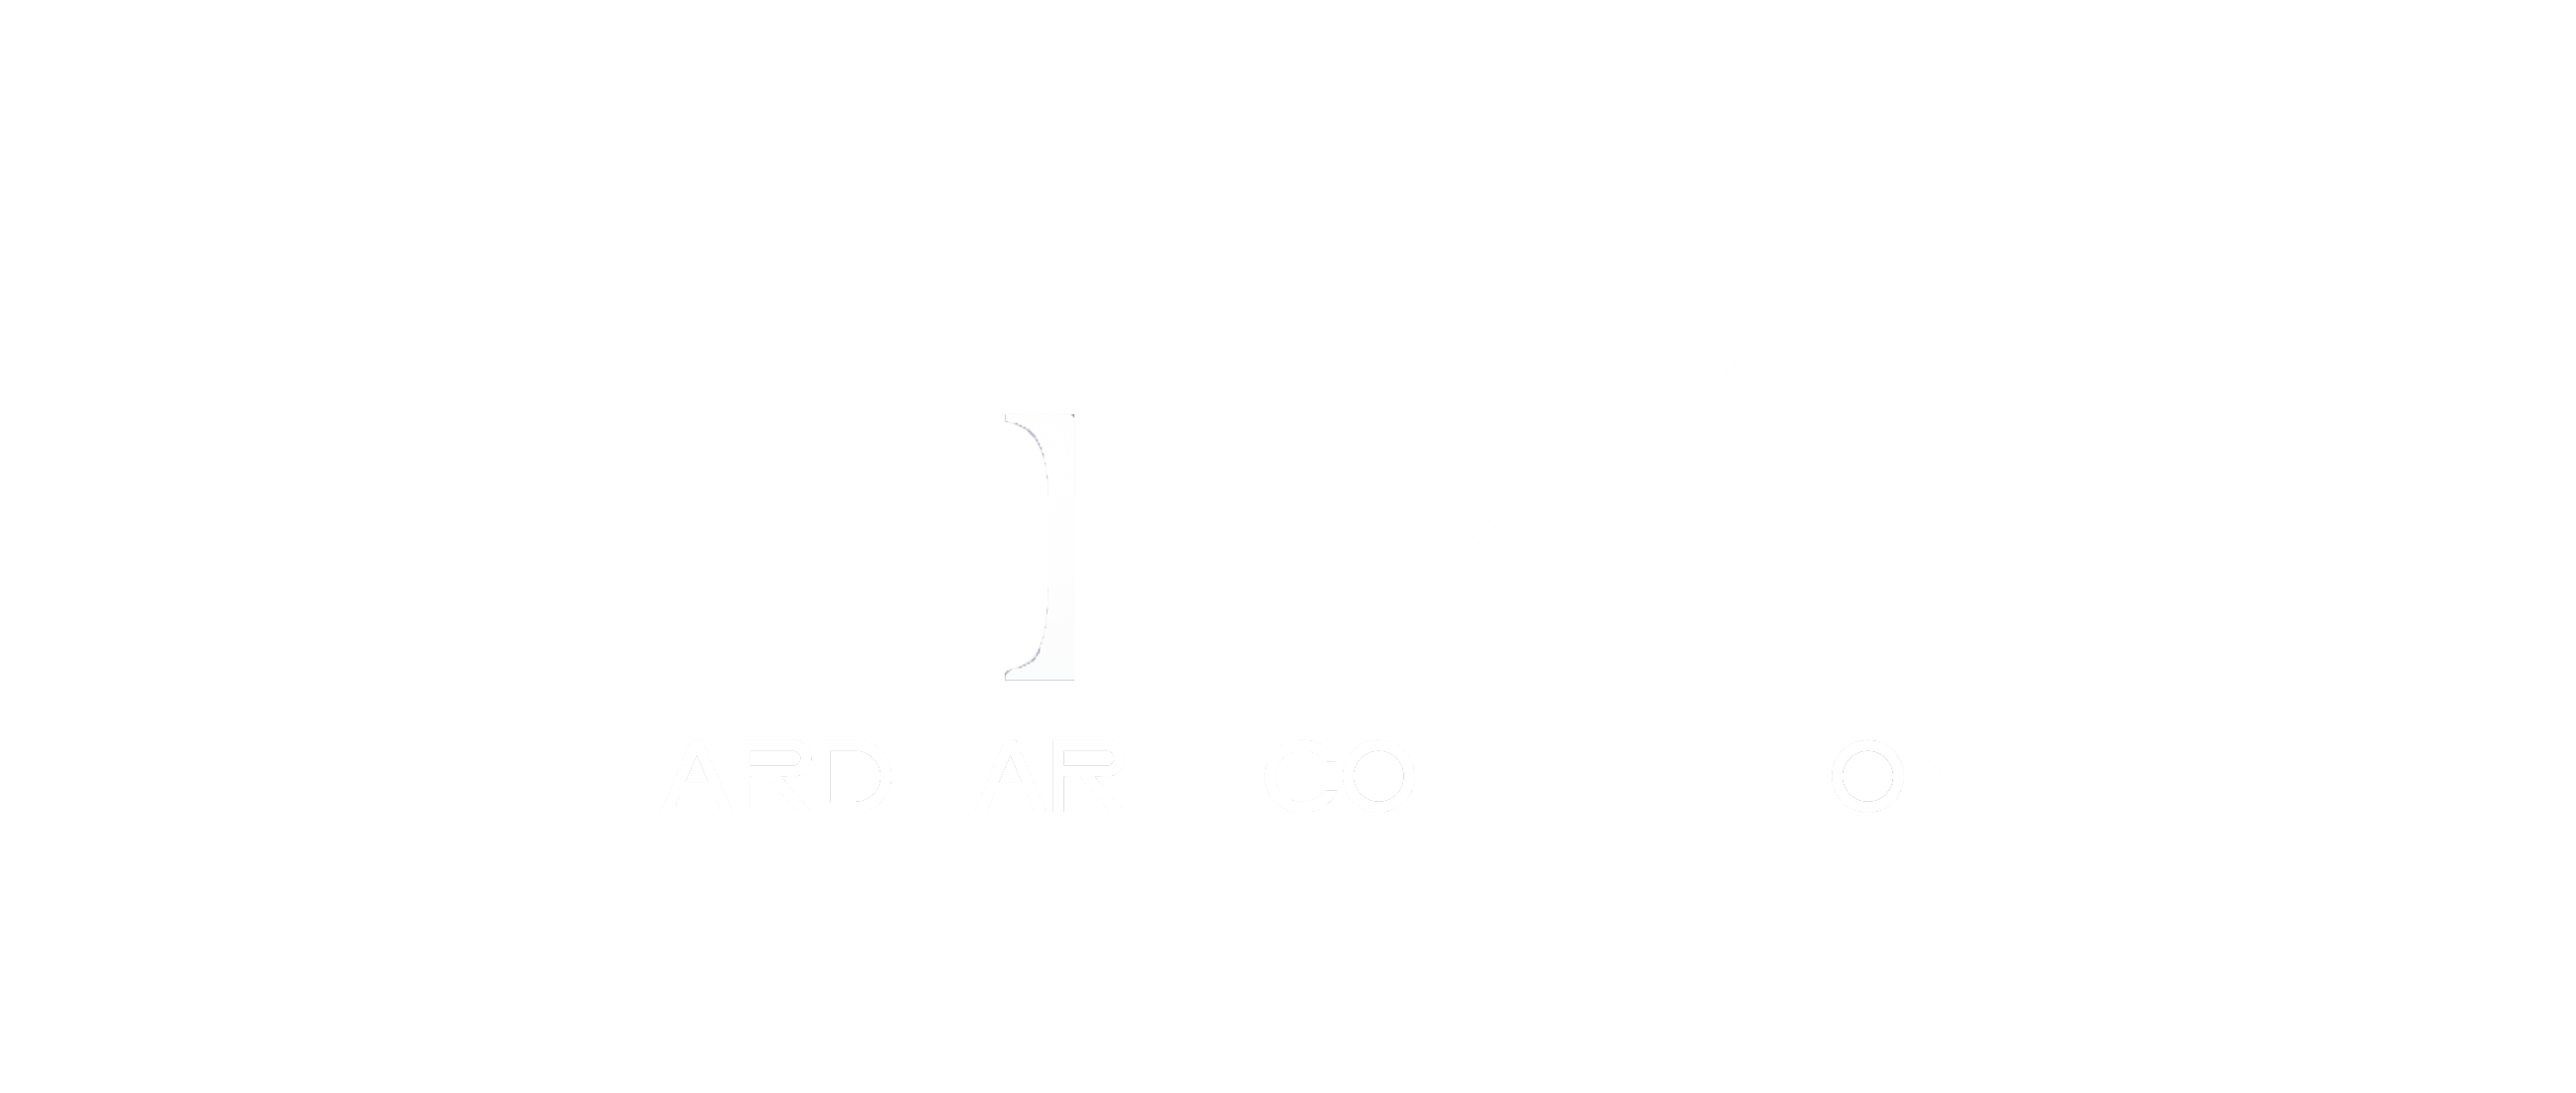 Kings Hardware